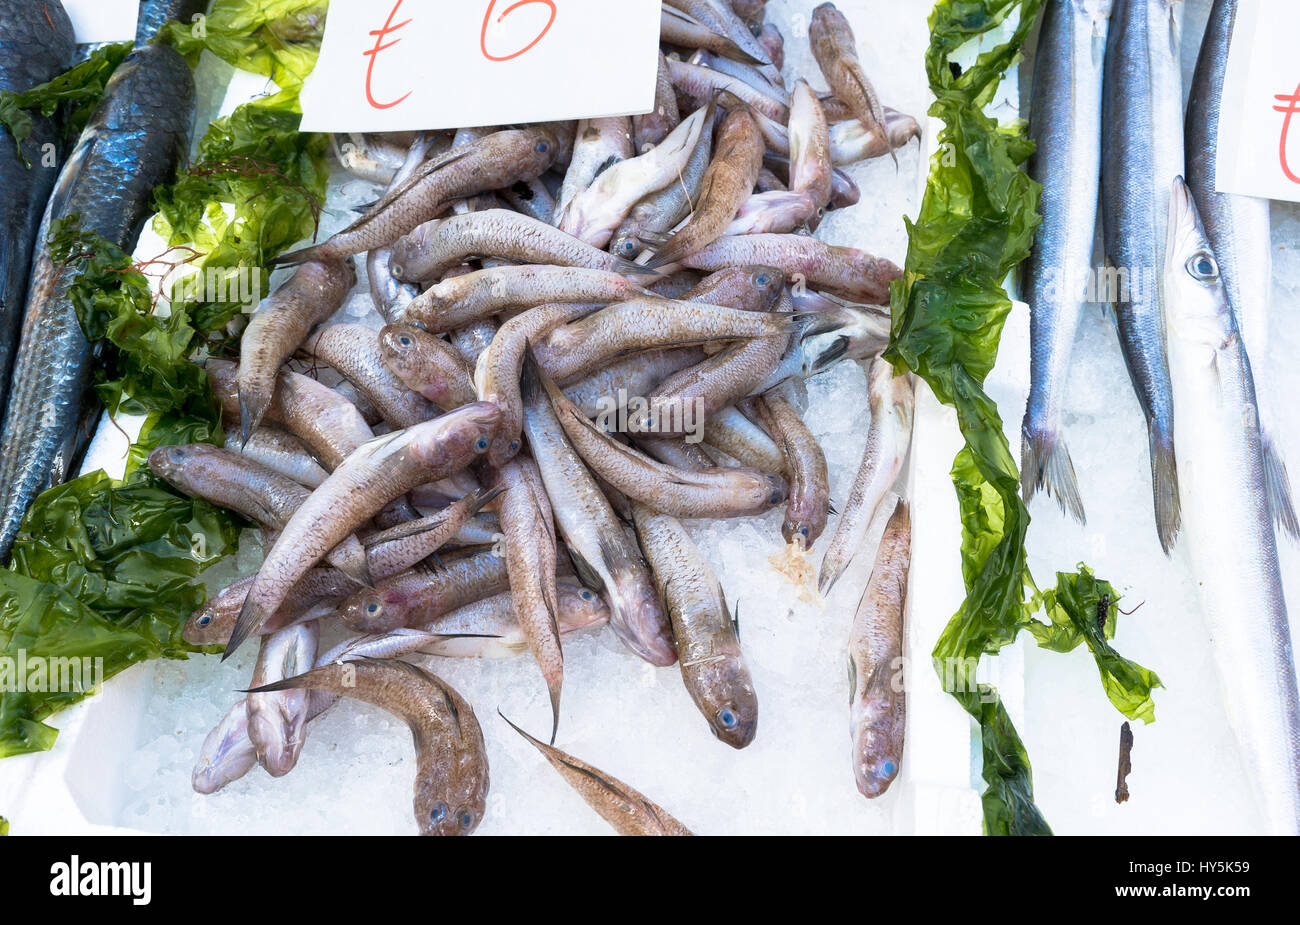 some fish at the  market. Napoli, Italy Stock Photo